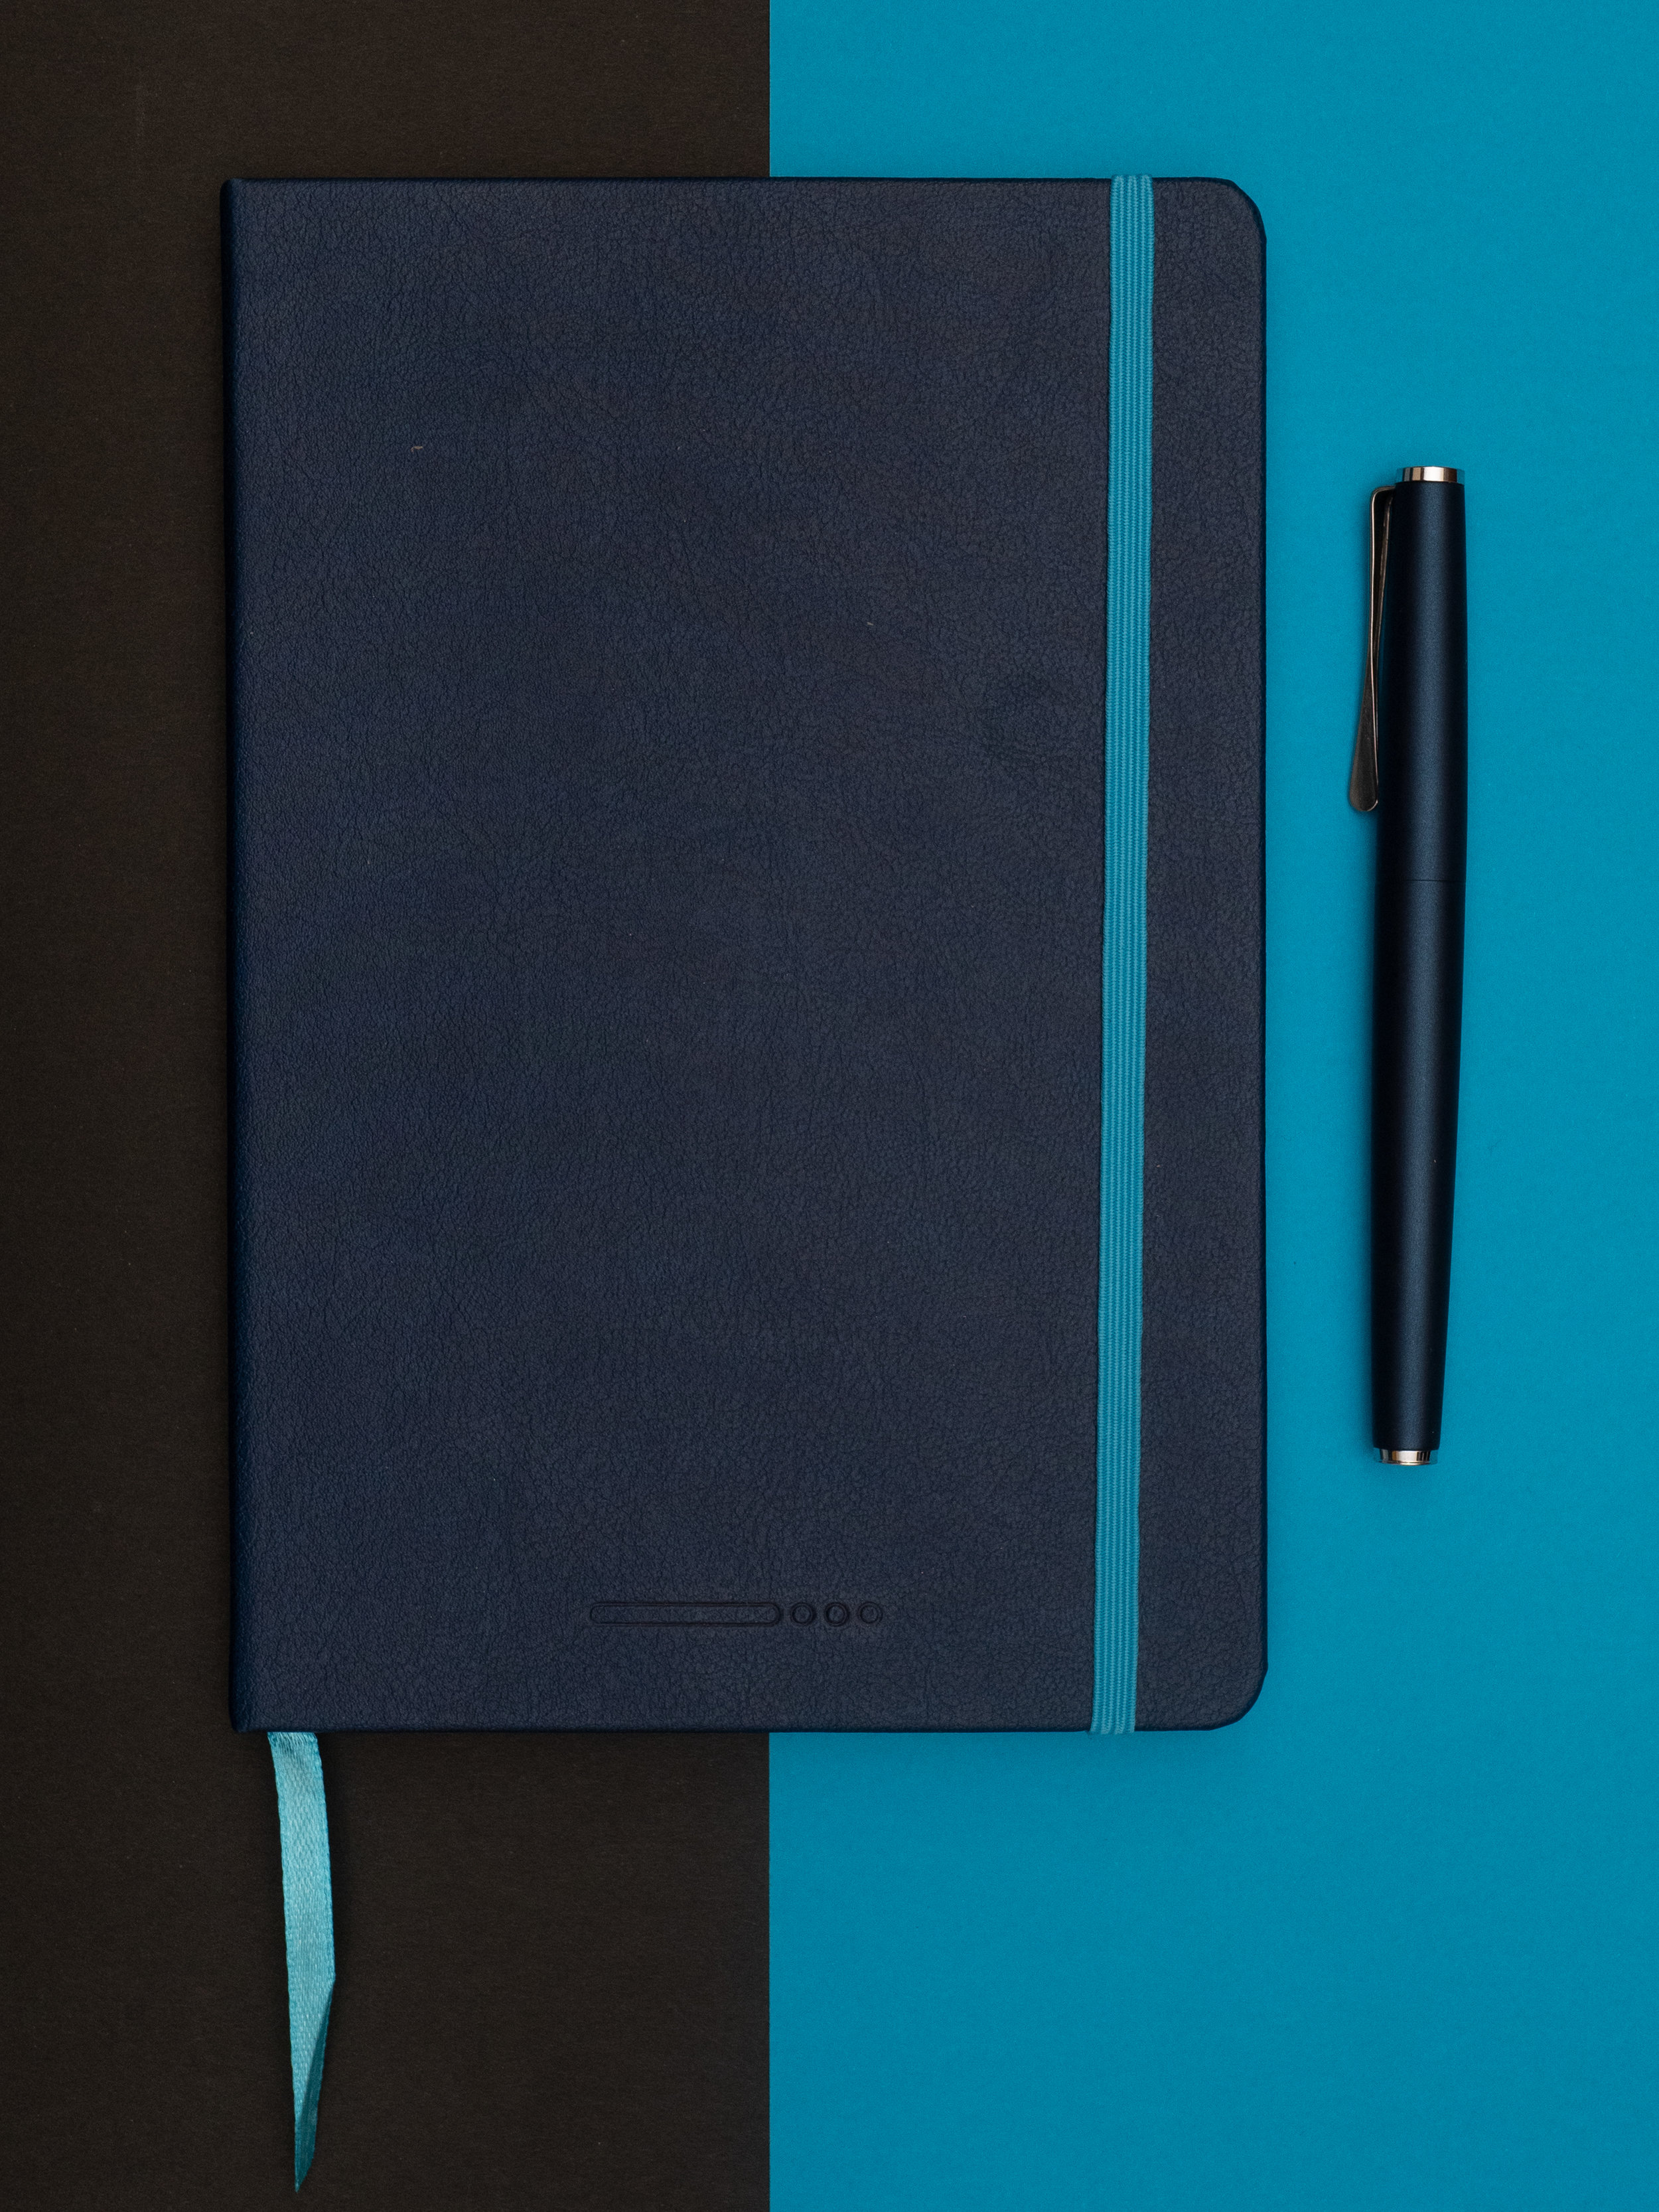 Leuchtturm 1917 A5 Notebook: The Fountain-Pen Friendly Basic Black Notebook  — The Gentleman Stationer